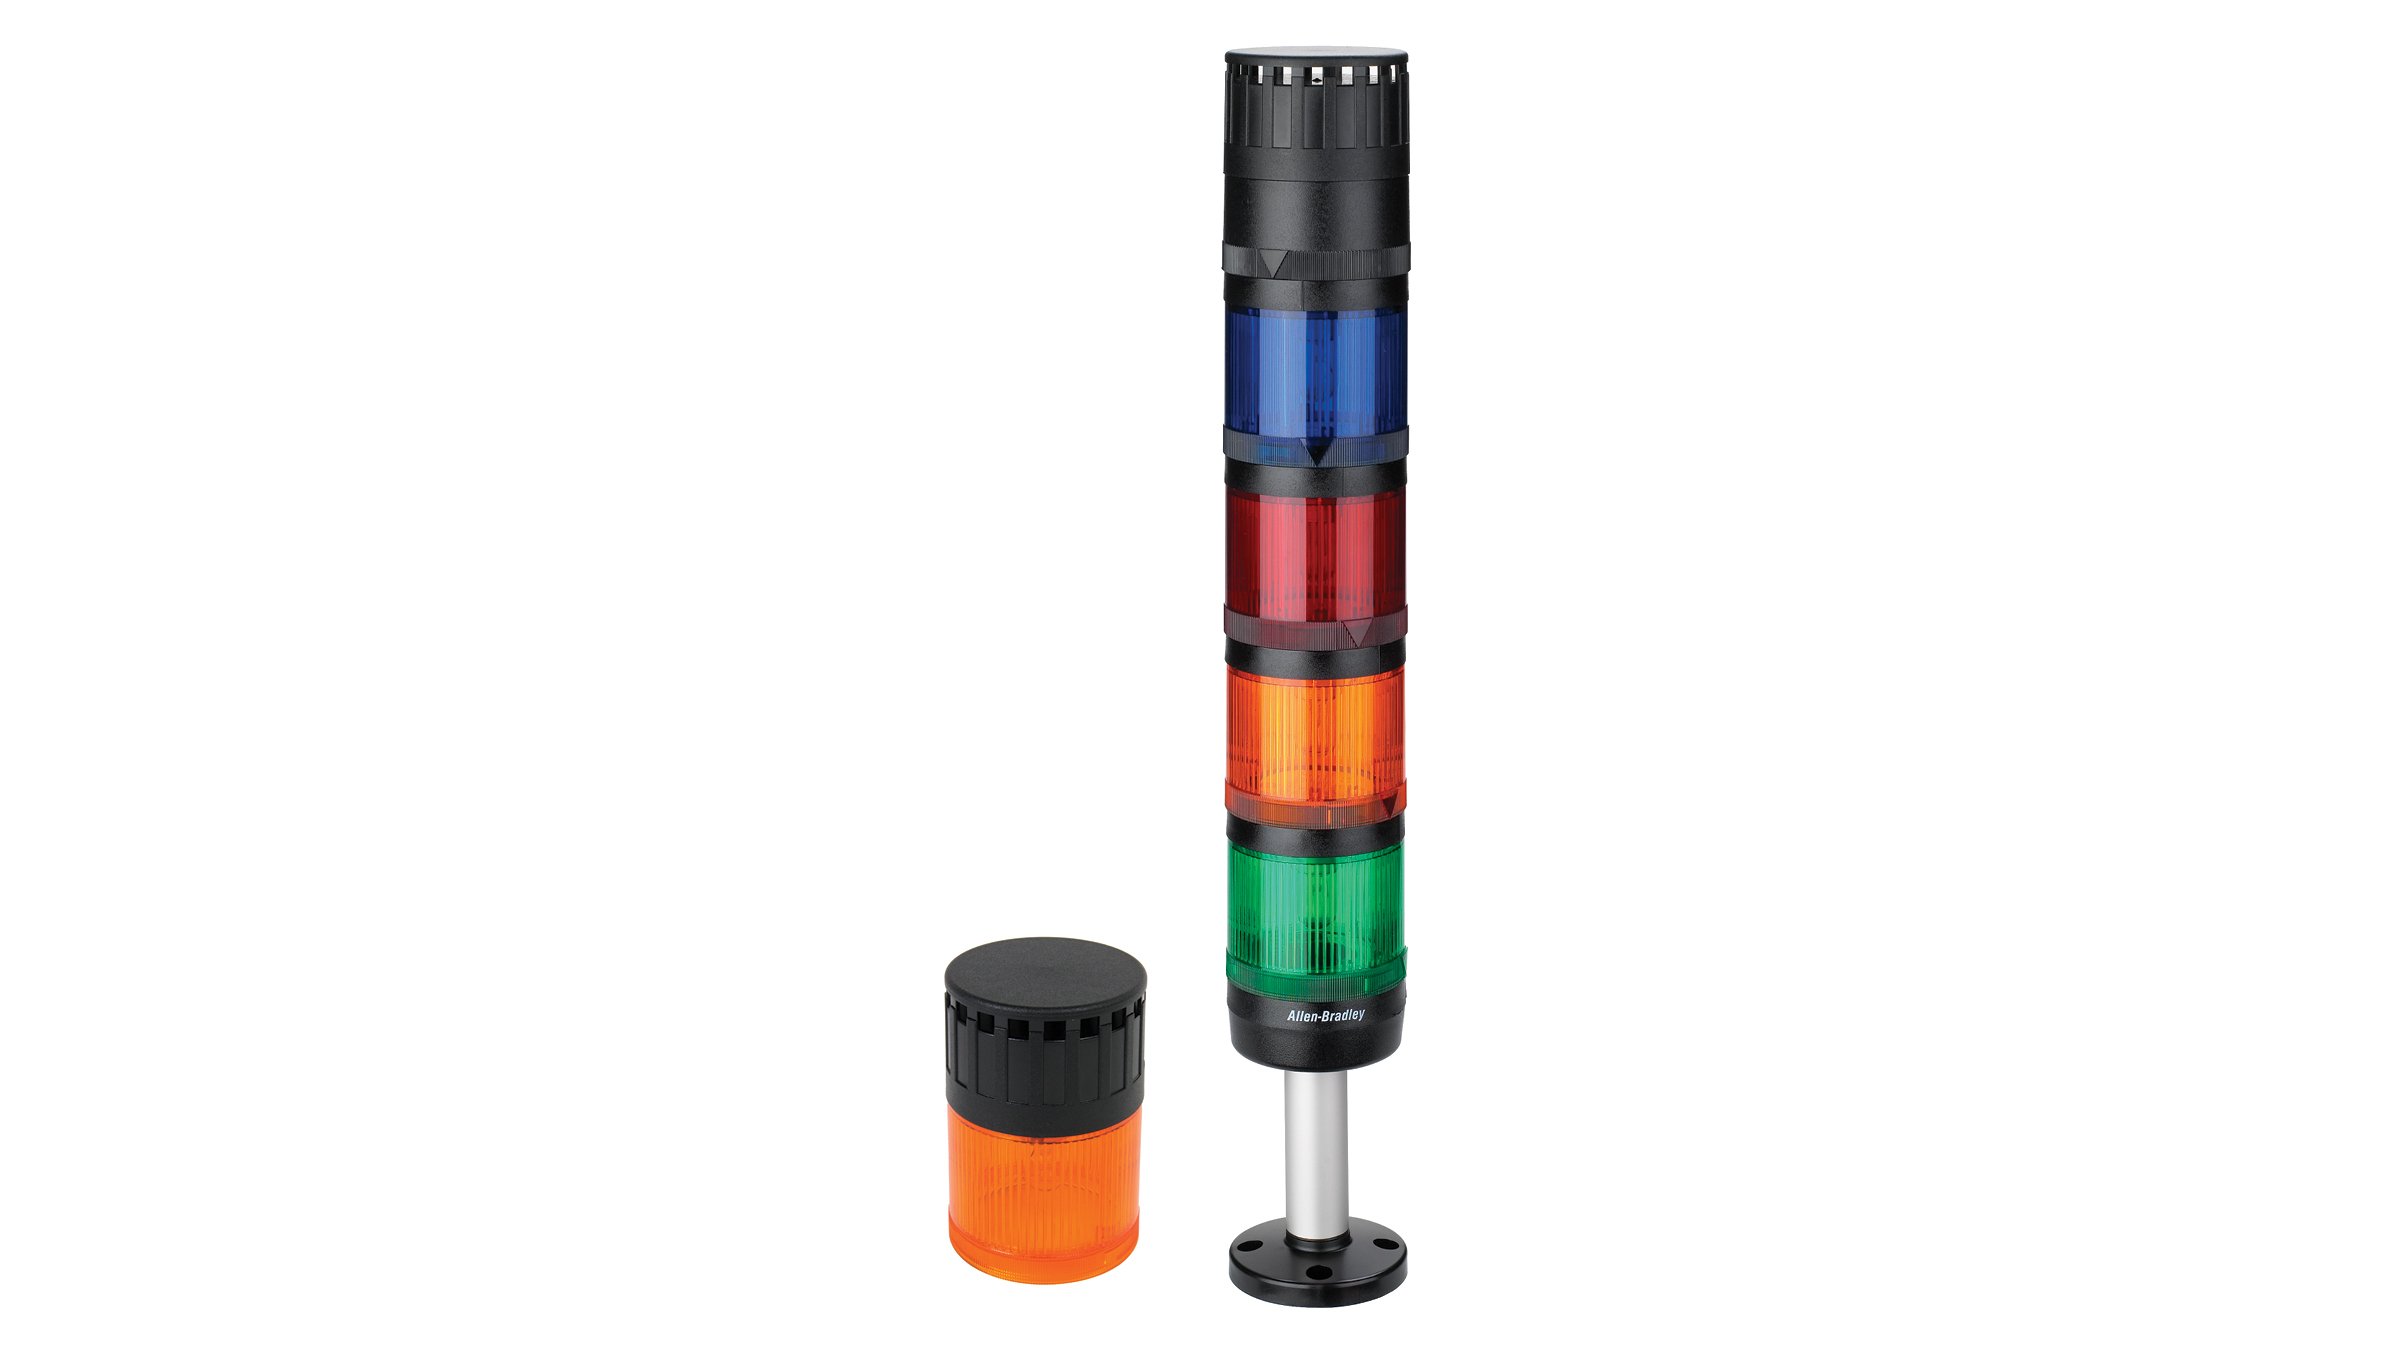 两个 855 控制塔烟囱灯，一个具有黑色顶部的橙色控制塔烟囱灯；4 个烟囱灯的底座分别为绿色、橙色、红色和蓝色，具有黑色顶部